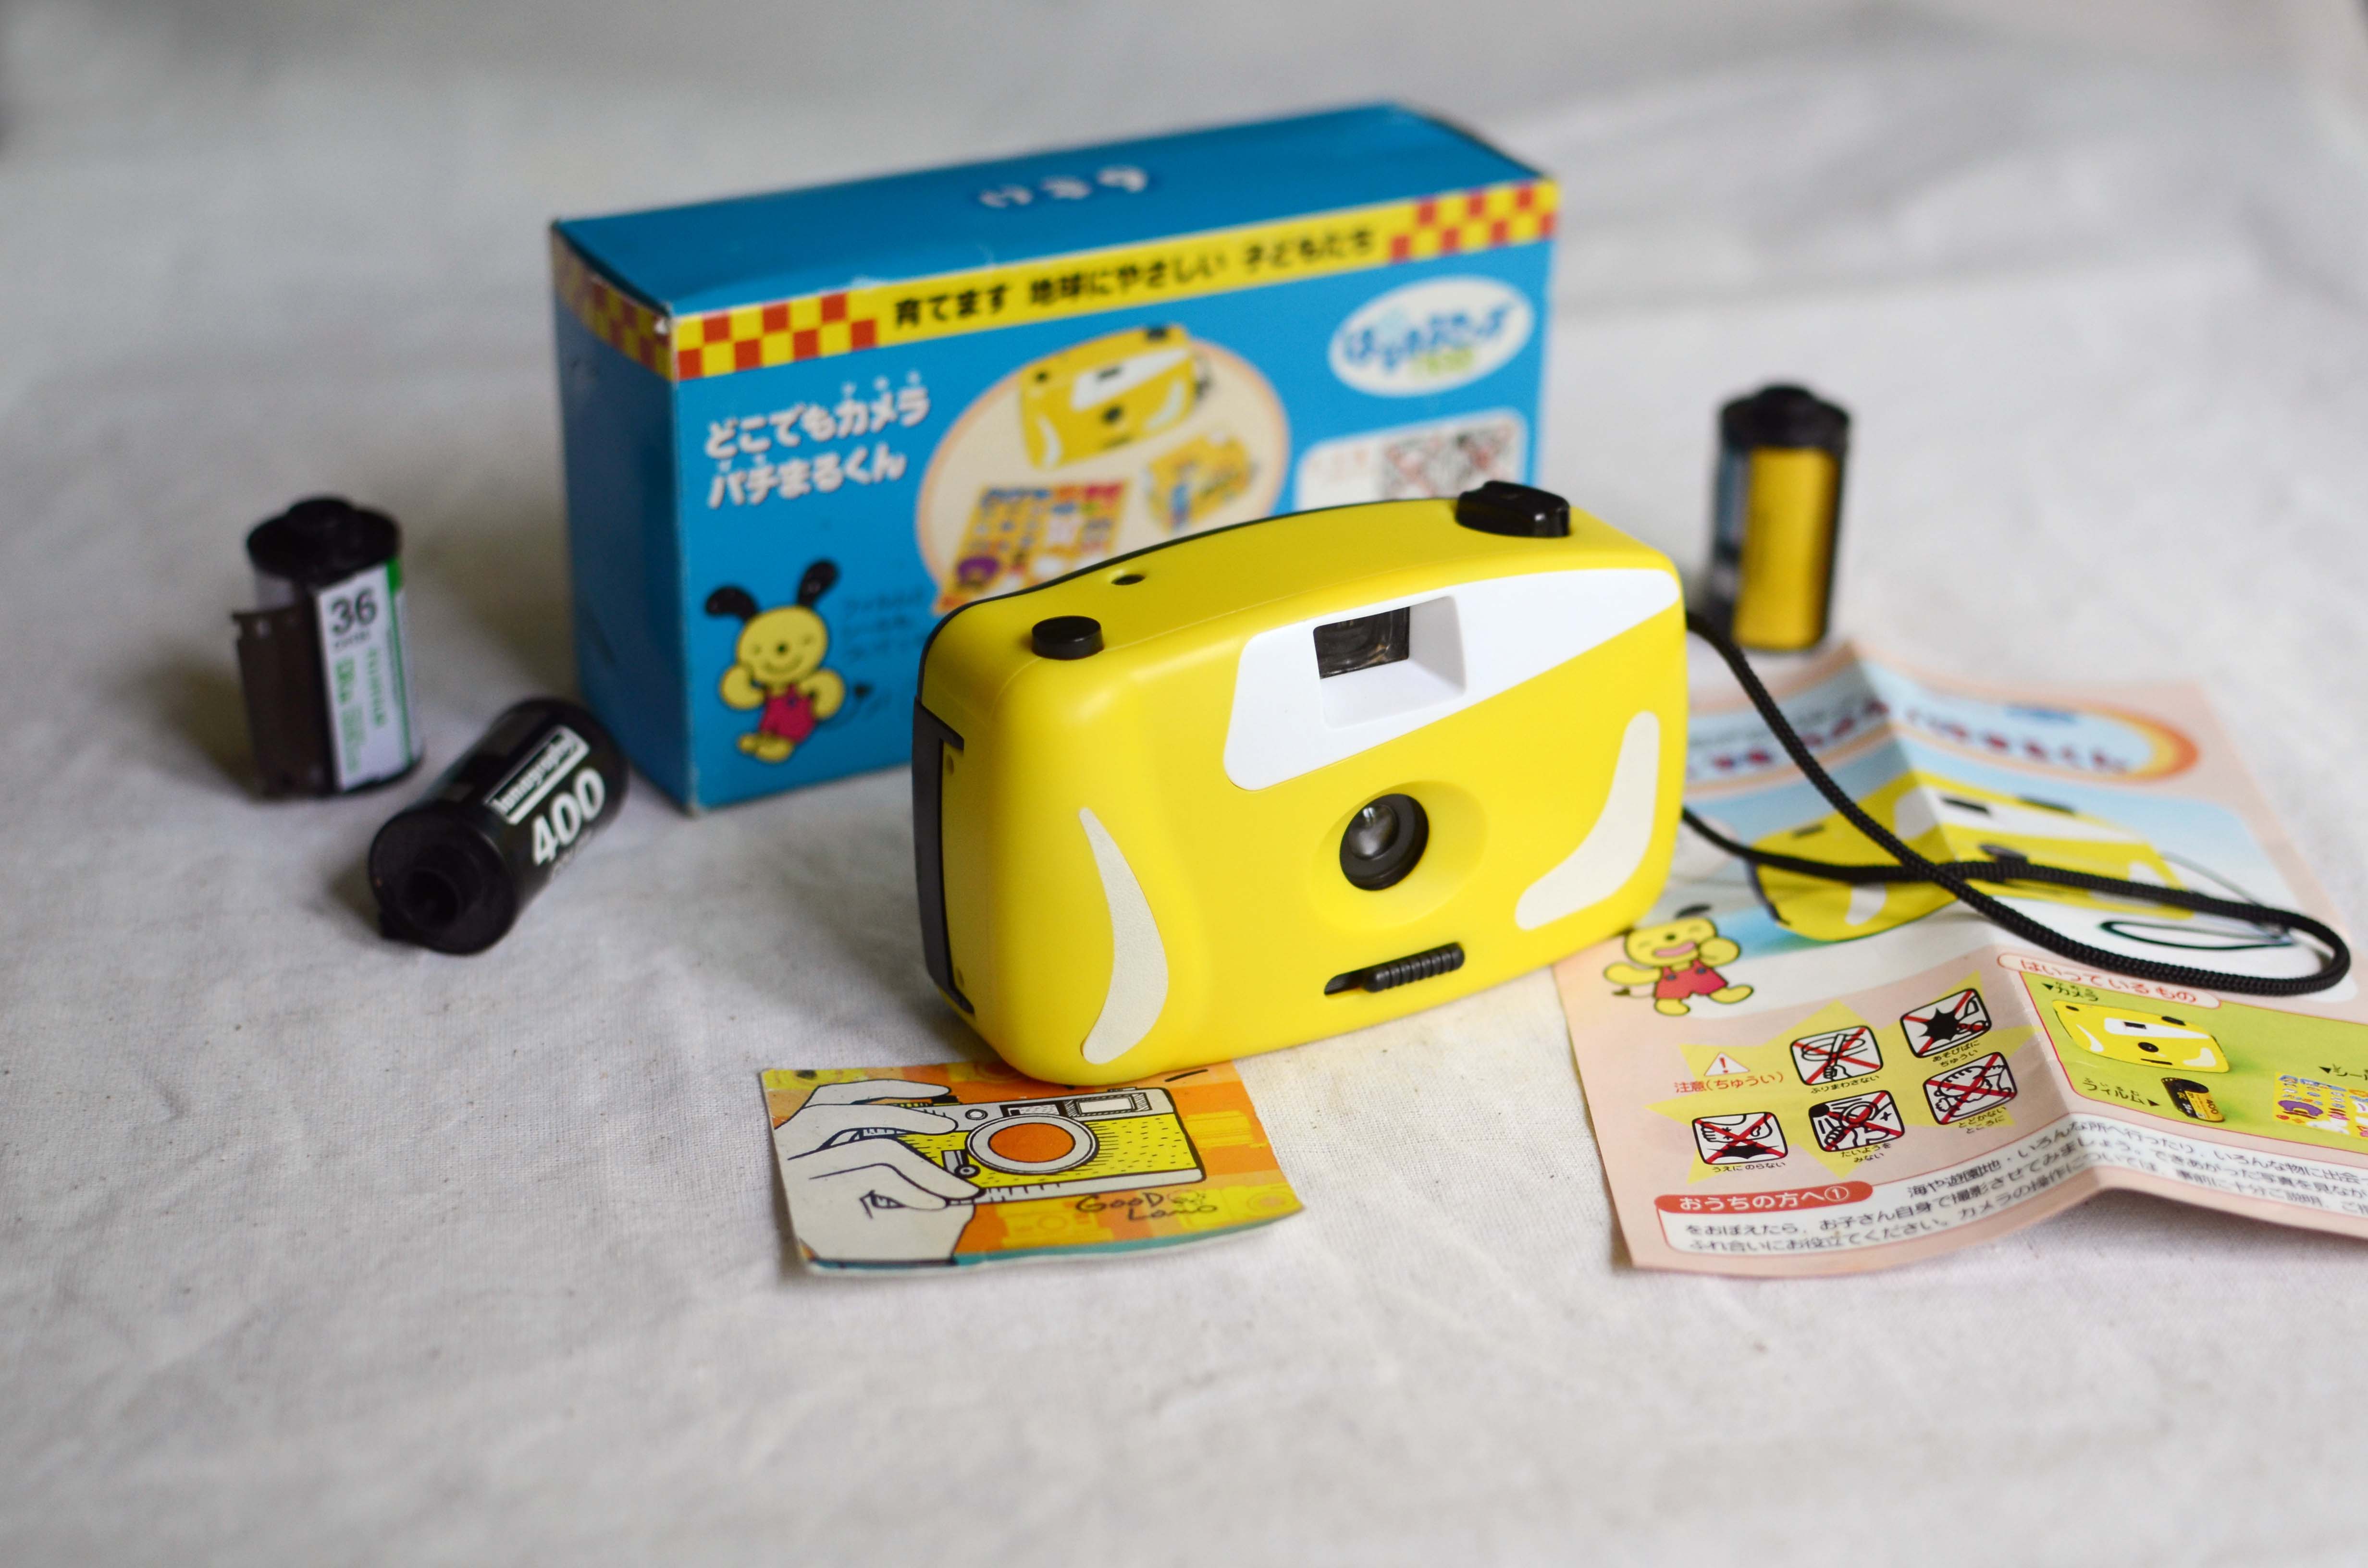 กล้องฟิล์ม กล้องทอยสีเหลือง japan